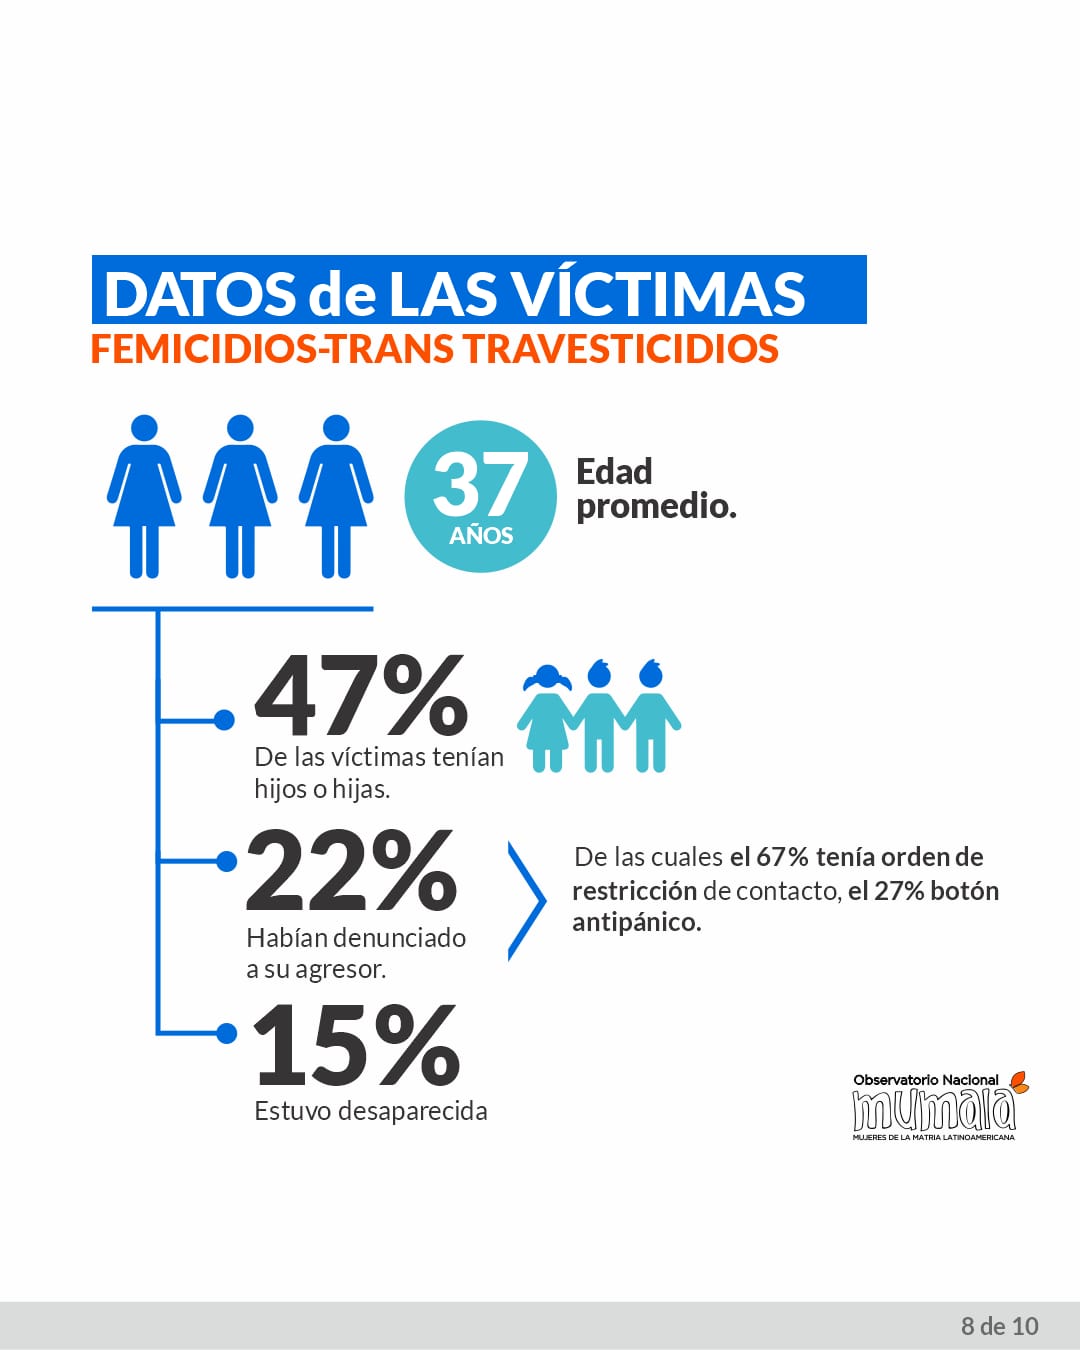 Femicidios: de enero a octubre se cometió una muerte violenta cada 22 horas, según informe imagen-12